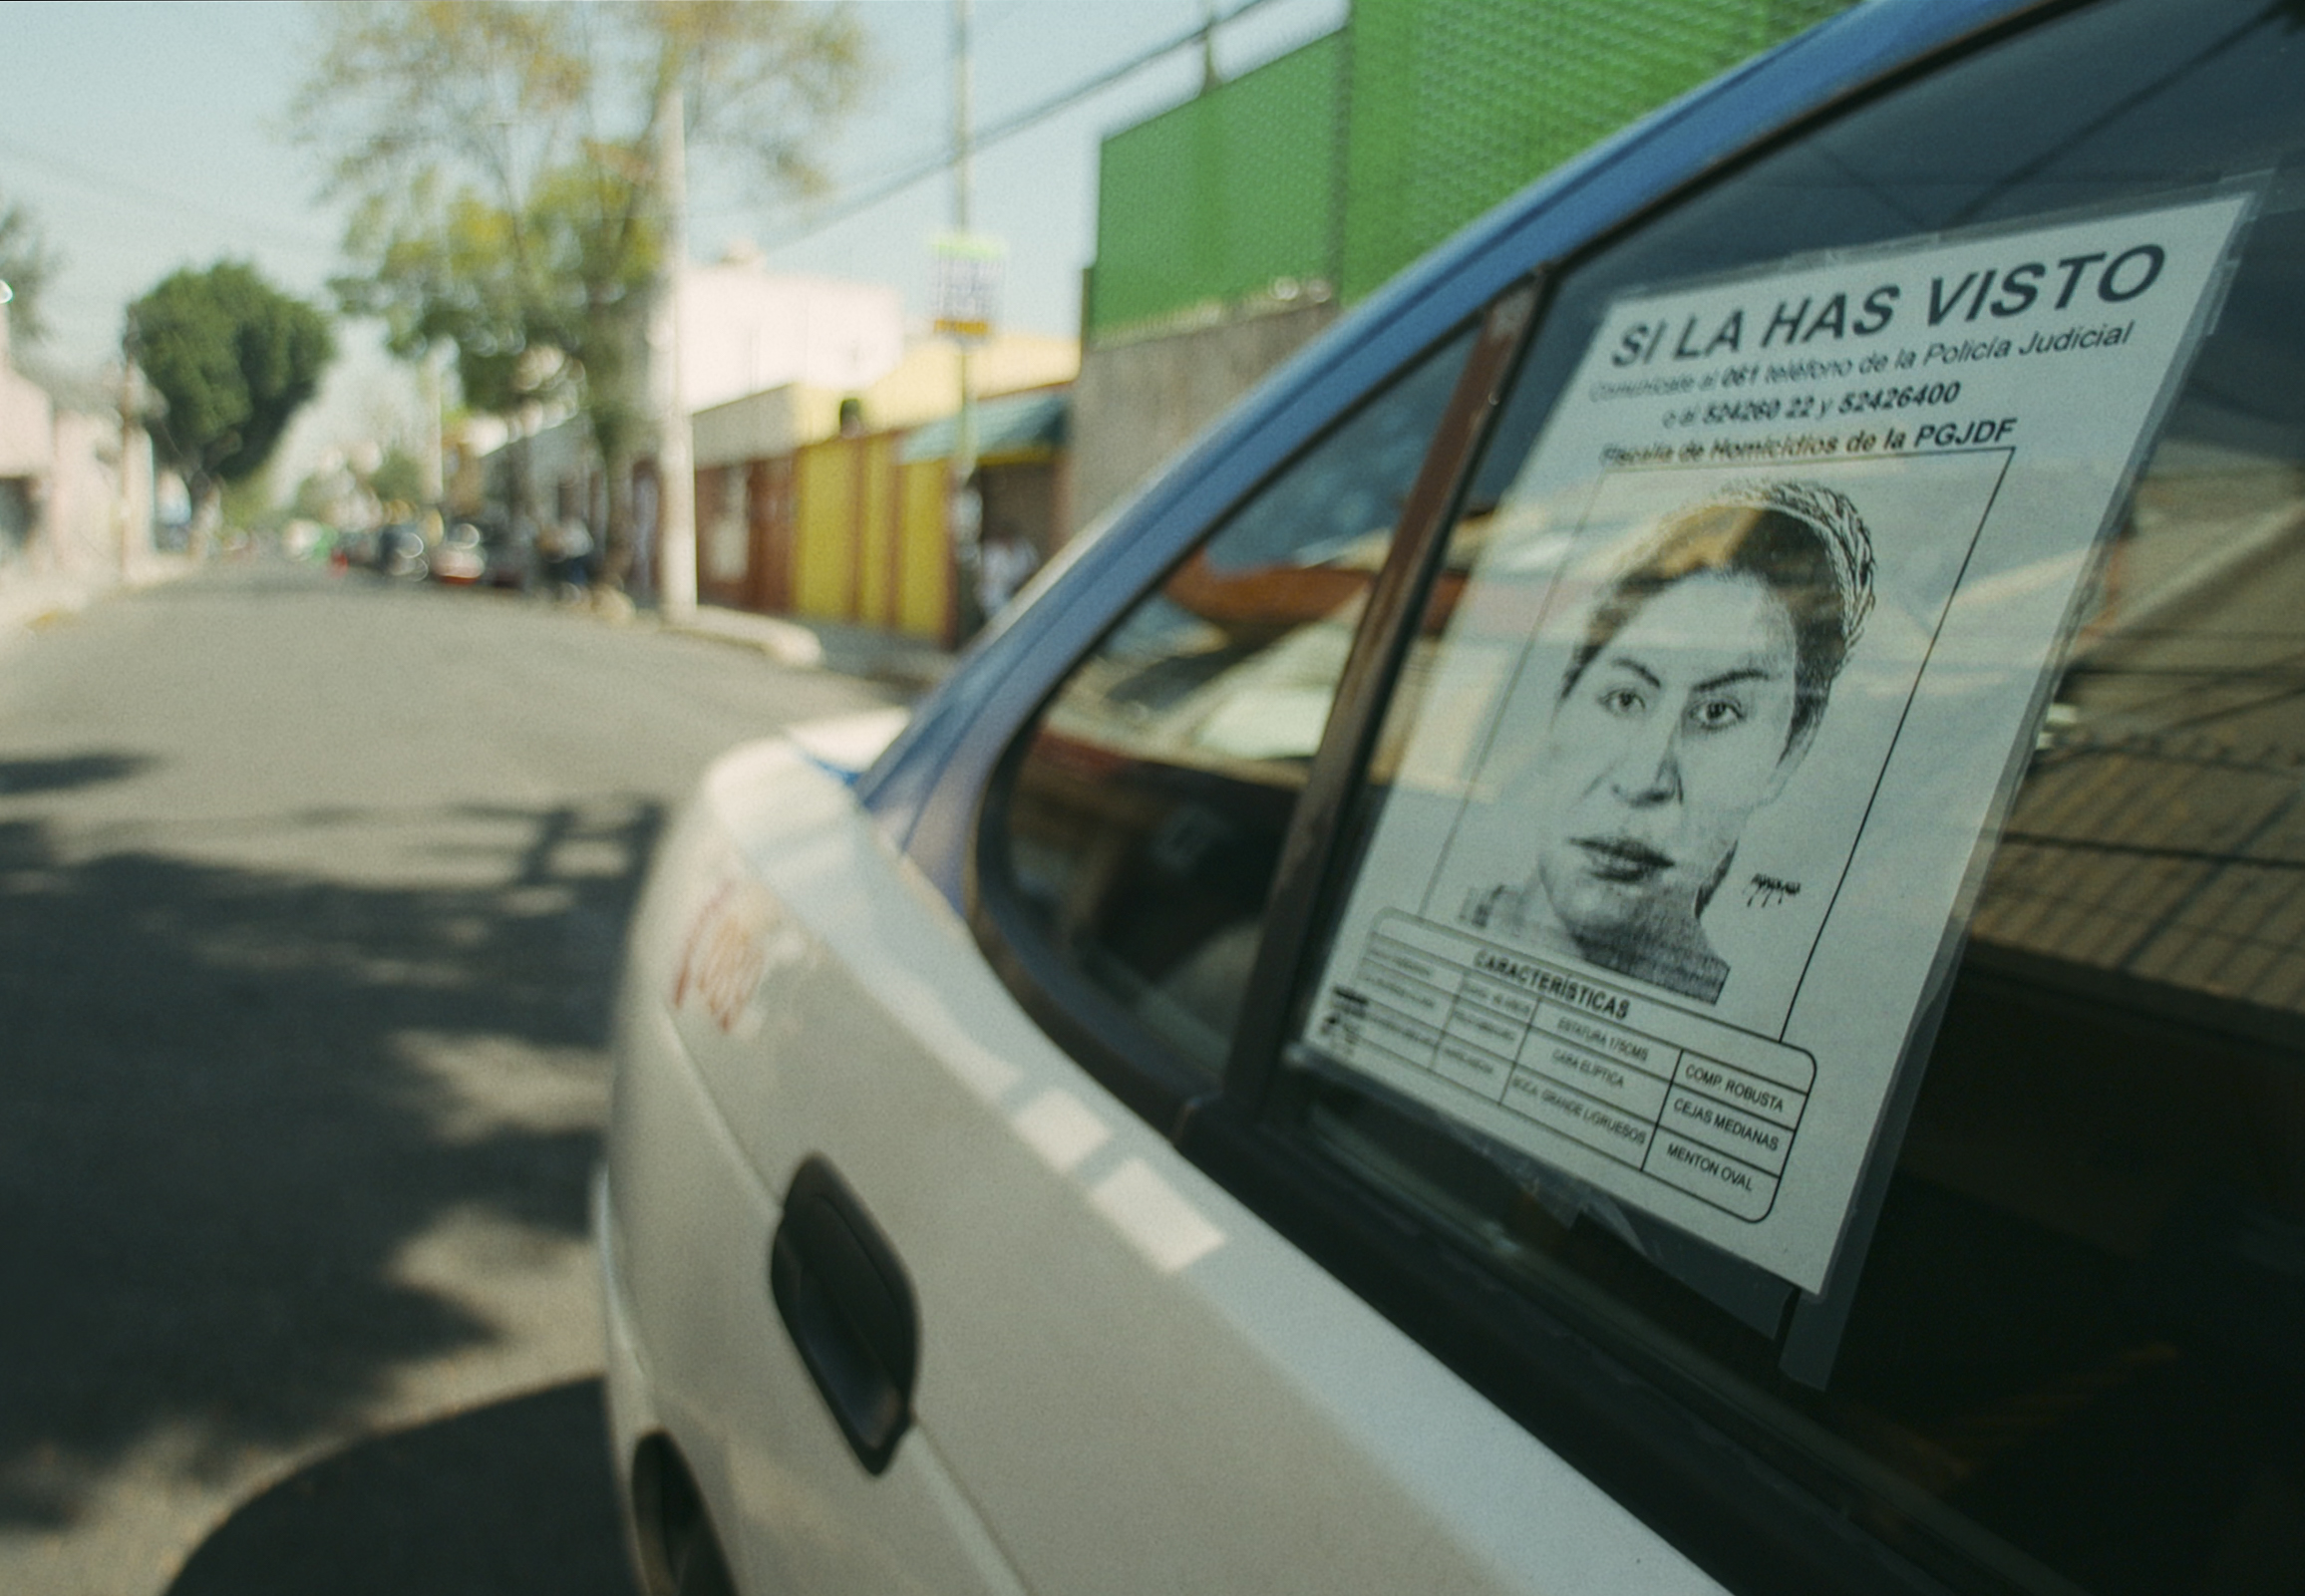 Check out the trailer for ‘La dama del silencio’, the documentary about ‘La mataviejitas’ on Netflix